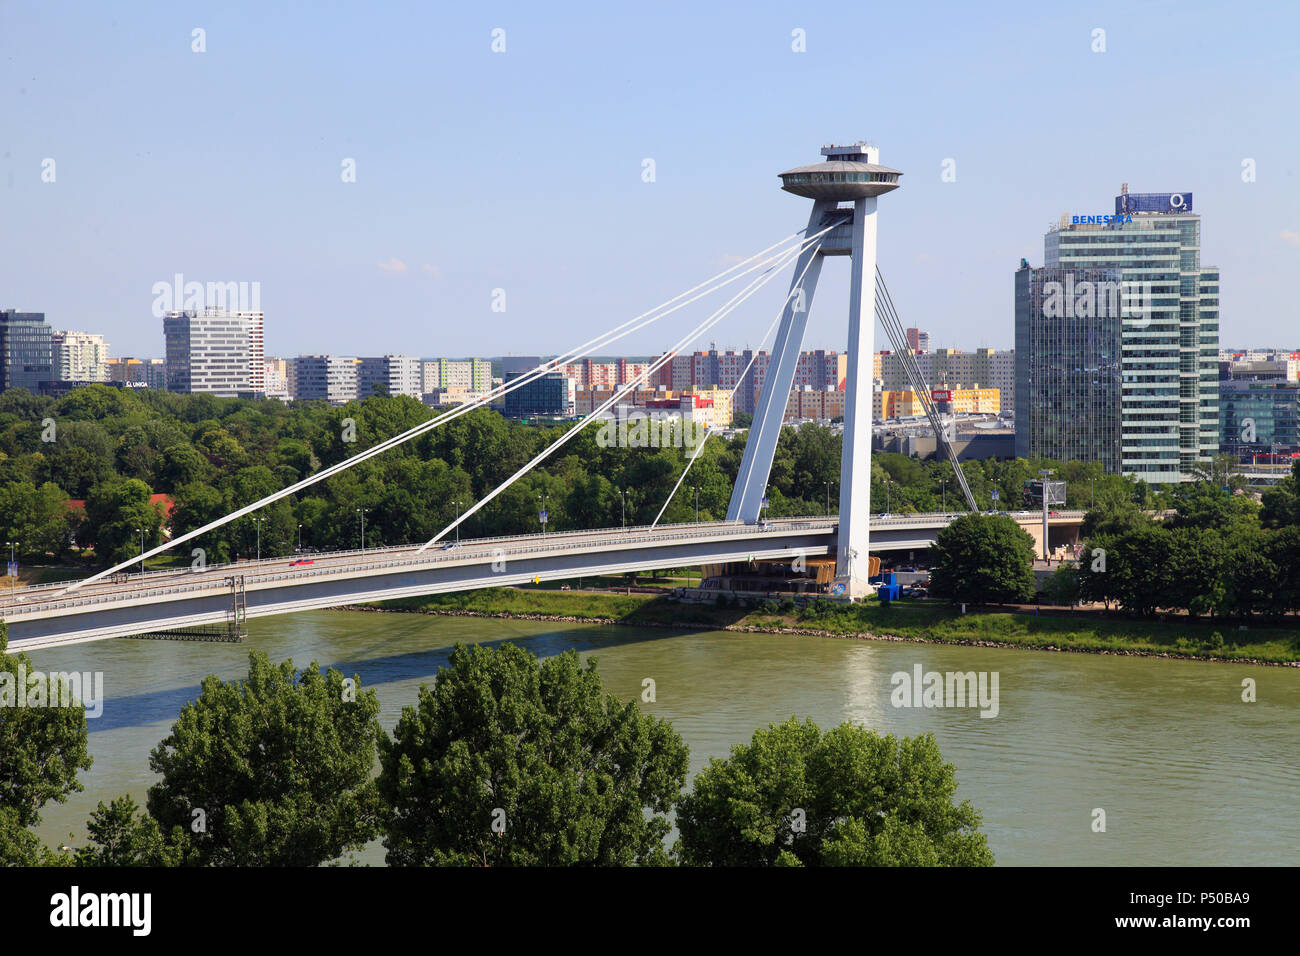 Slovakia, Bratislava, Danube river, SNP bridge, Stock Photo